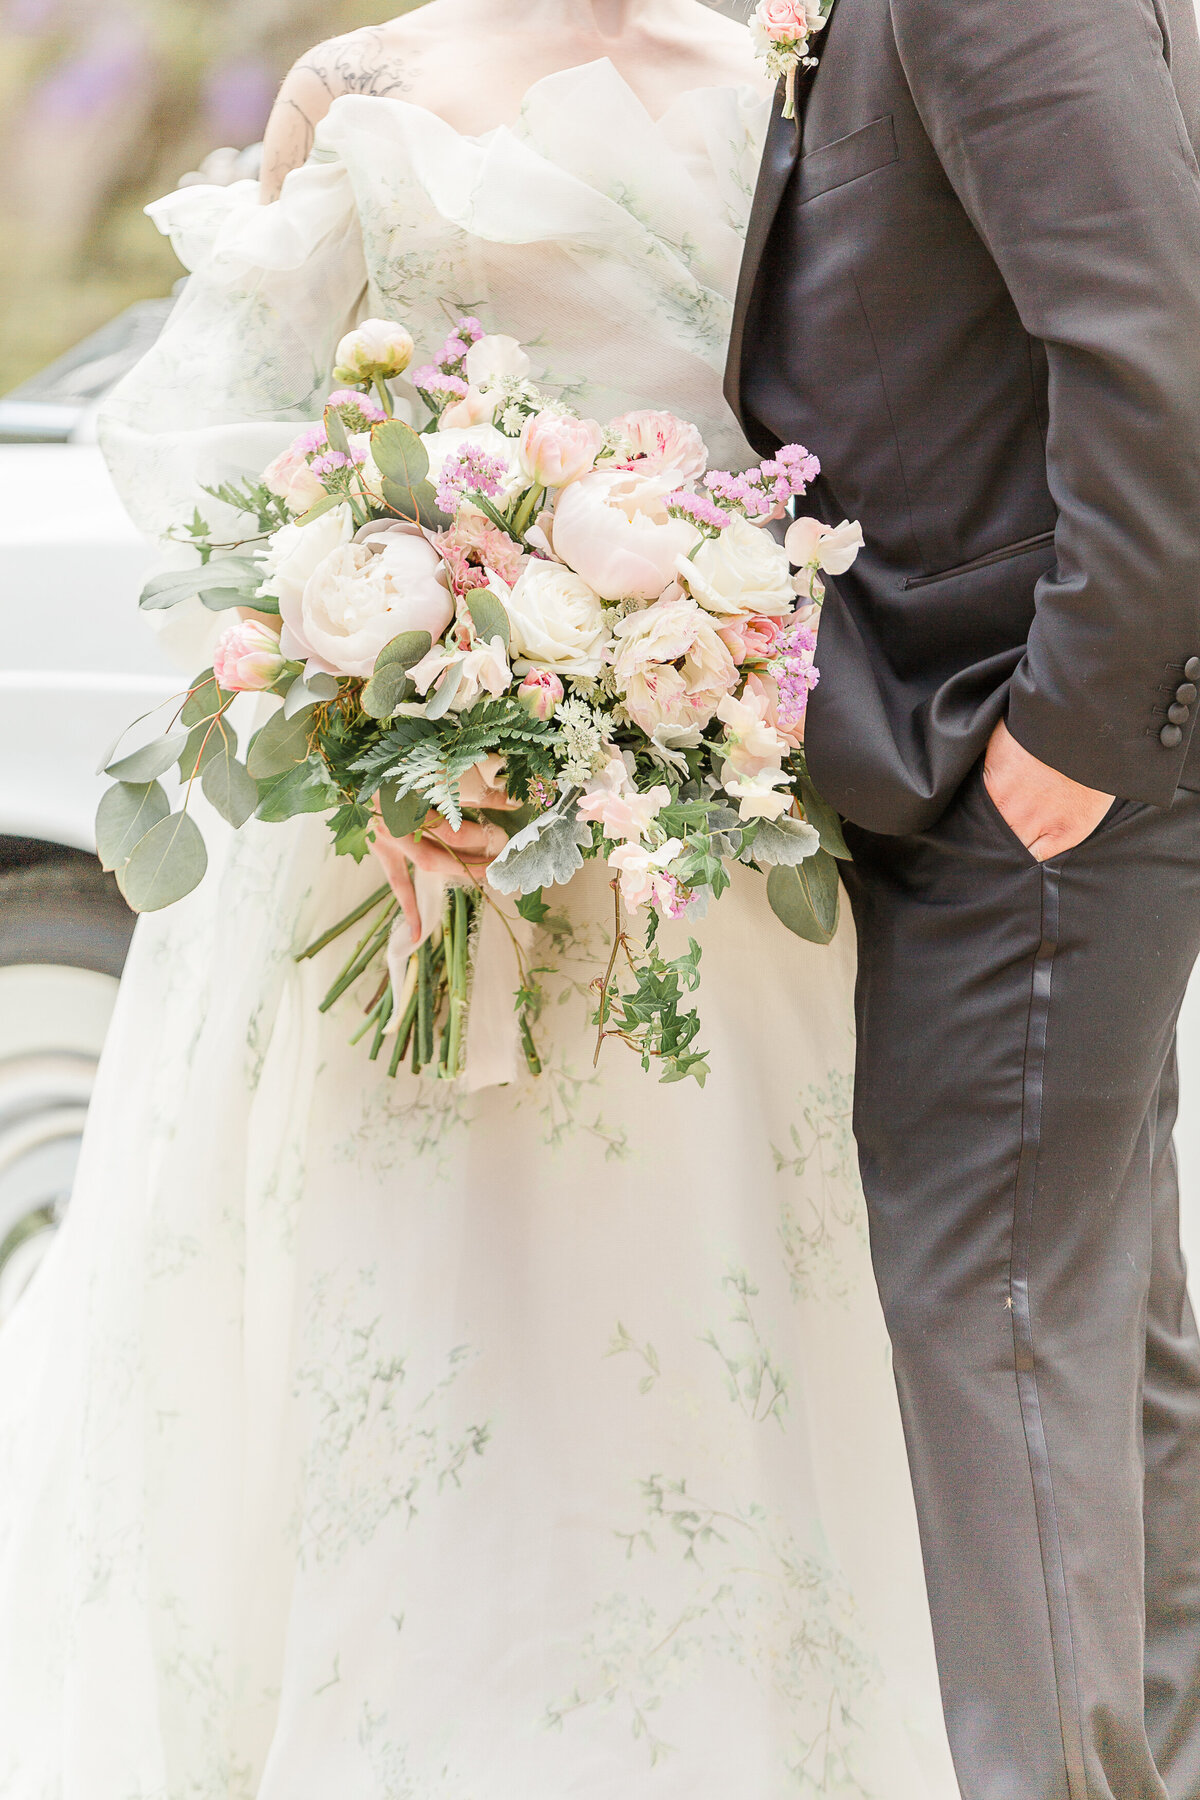 Detail image of bridal bouquet.